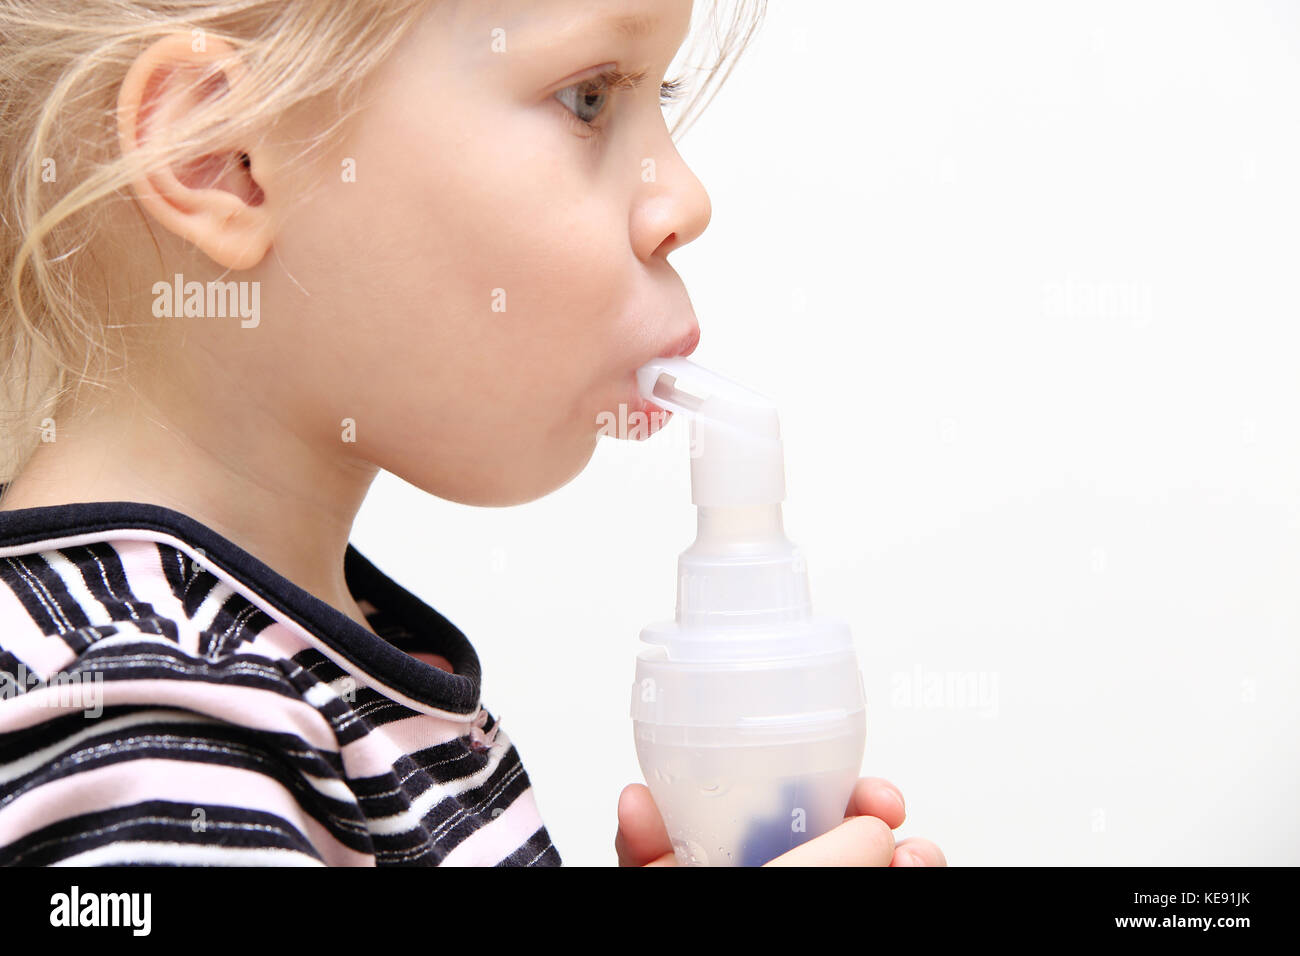 Bambino mediante inalatore isolati su sfondo bianco. Il tema del trattamento di bambini malattia respiratoria. Foto Stock